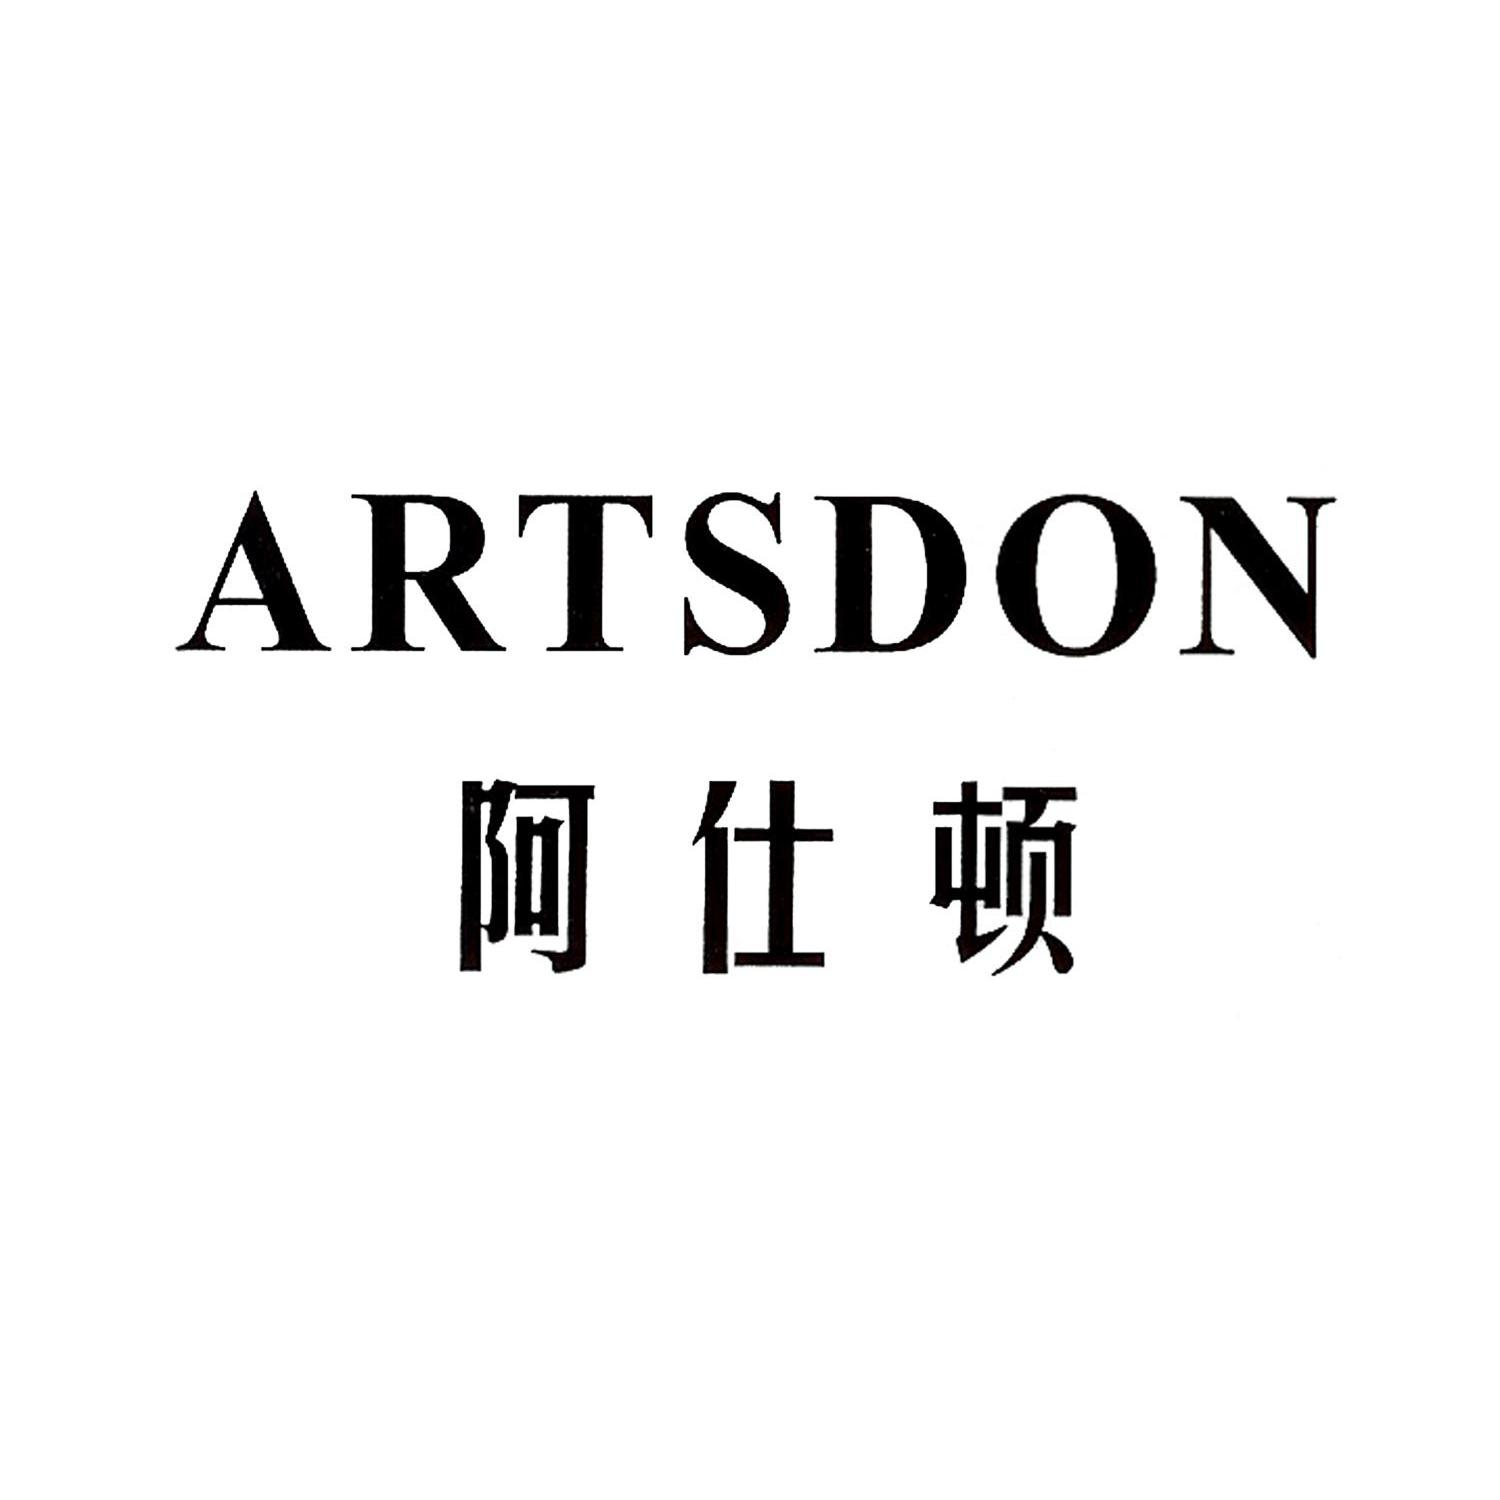 Artsdon